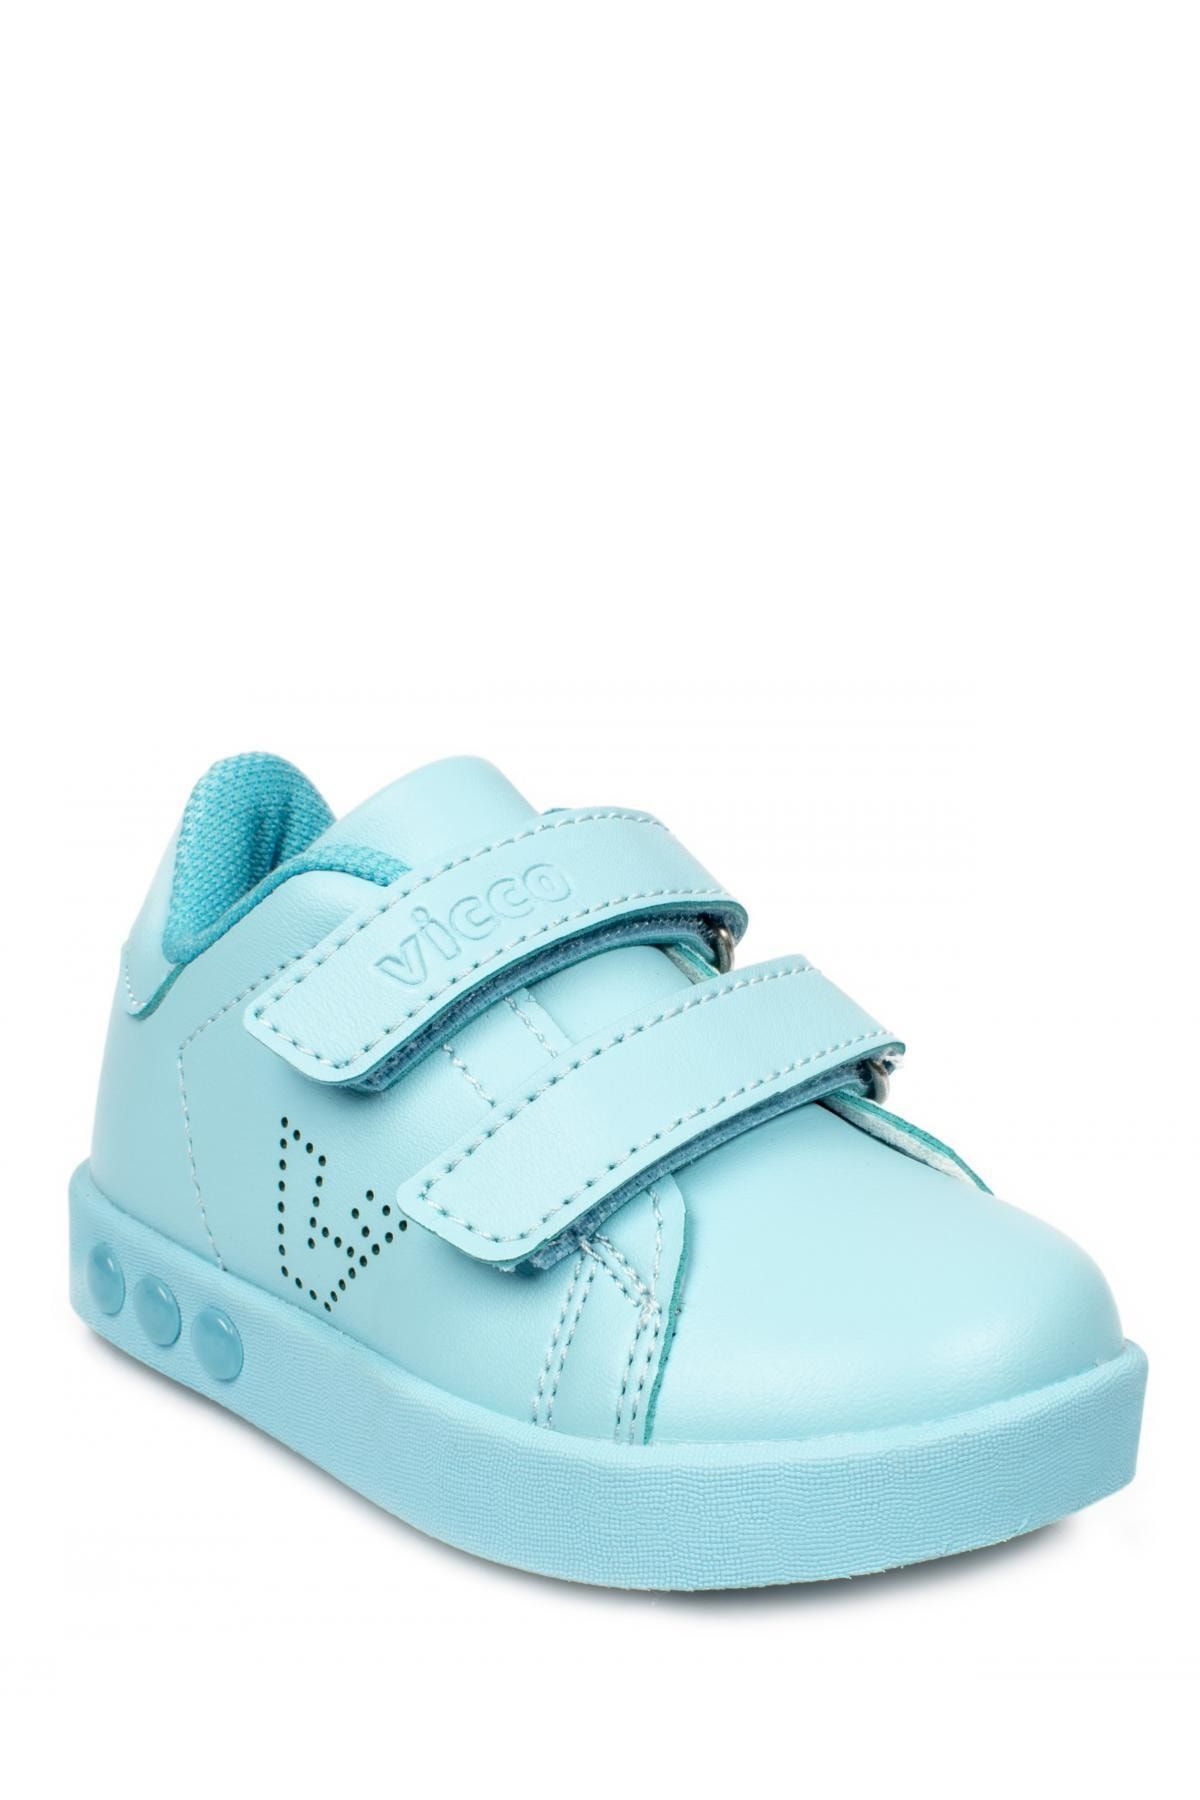 Vicco Bebe Işıklı Spor Ayakkabı Çocuk Mavi